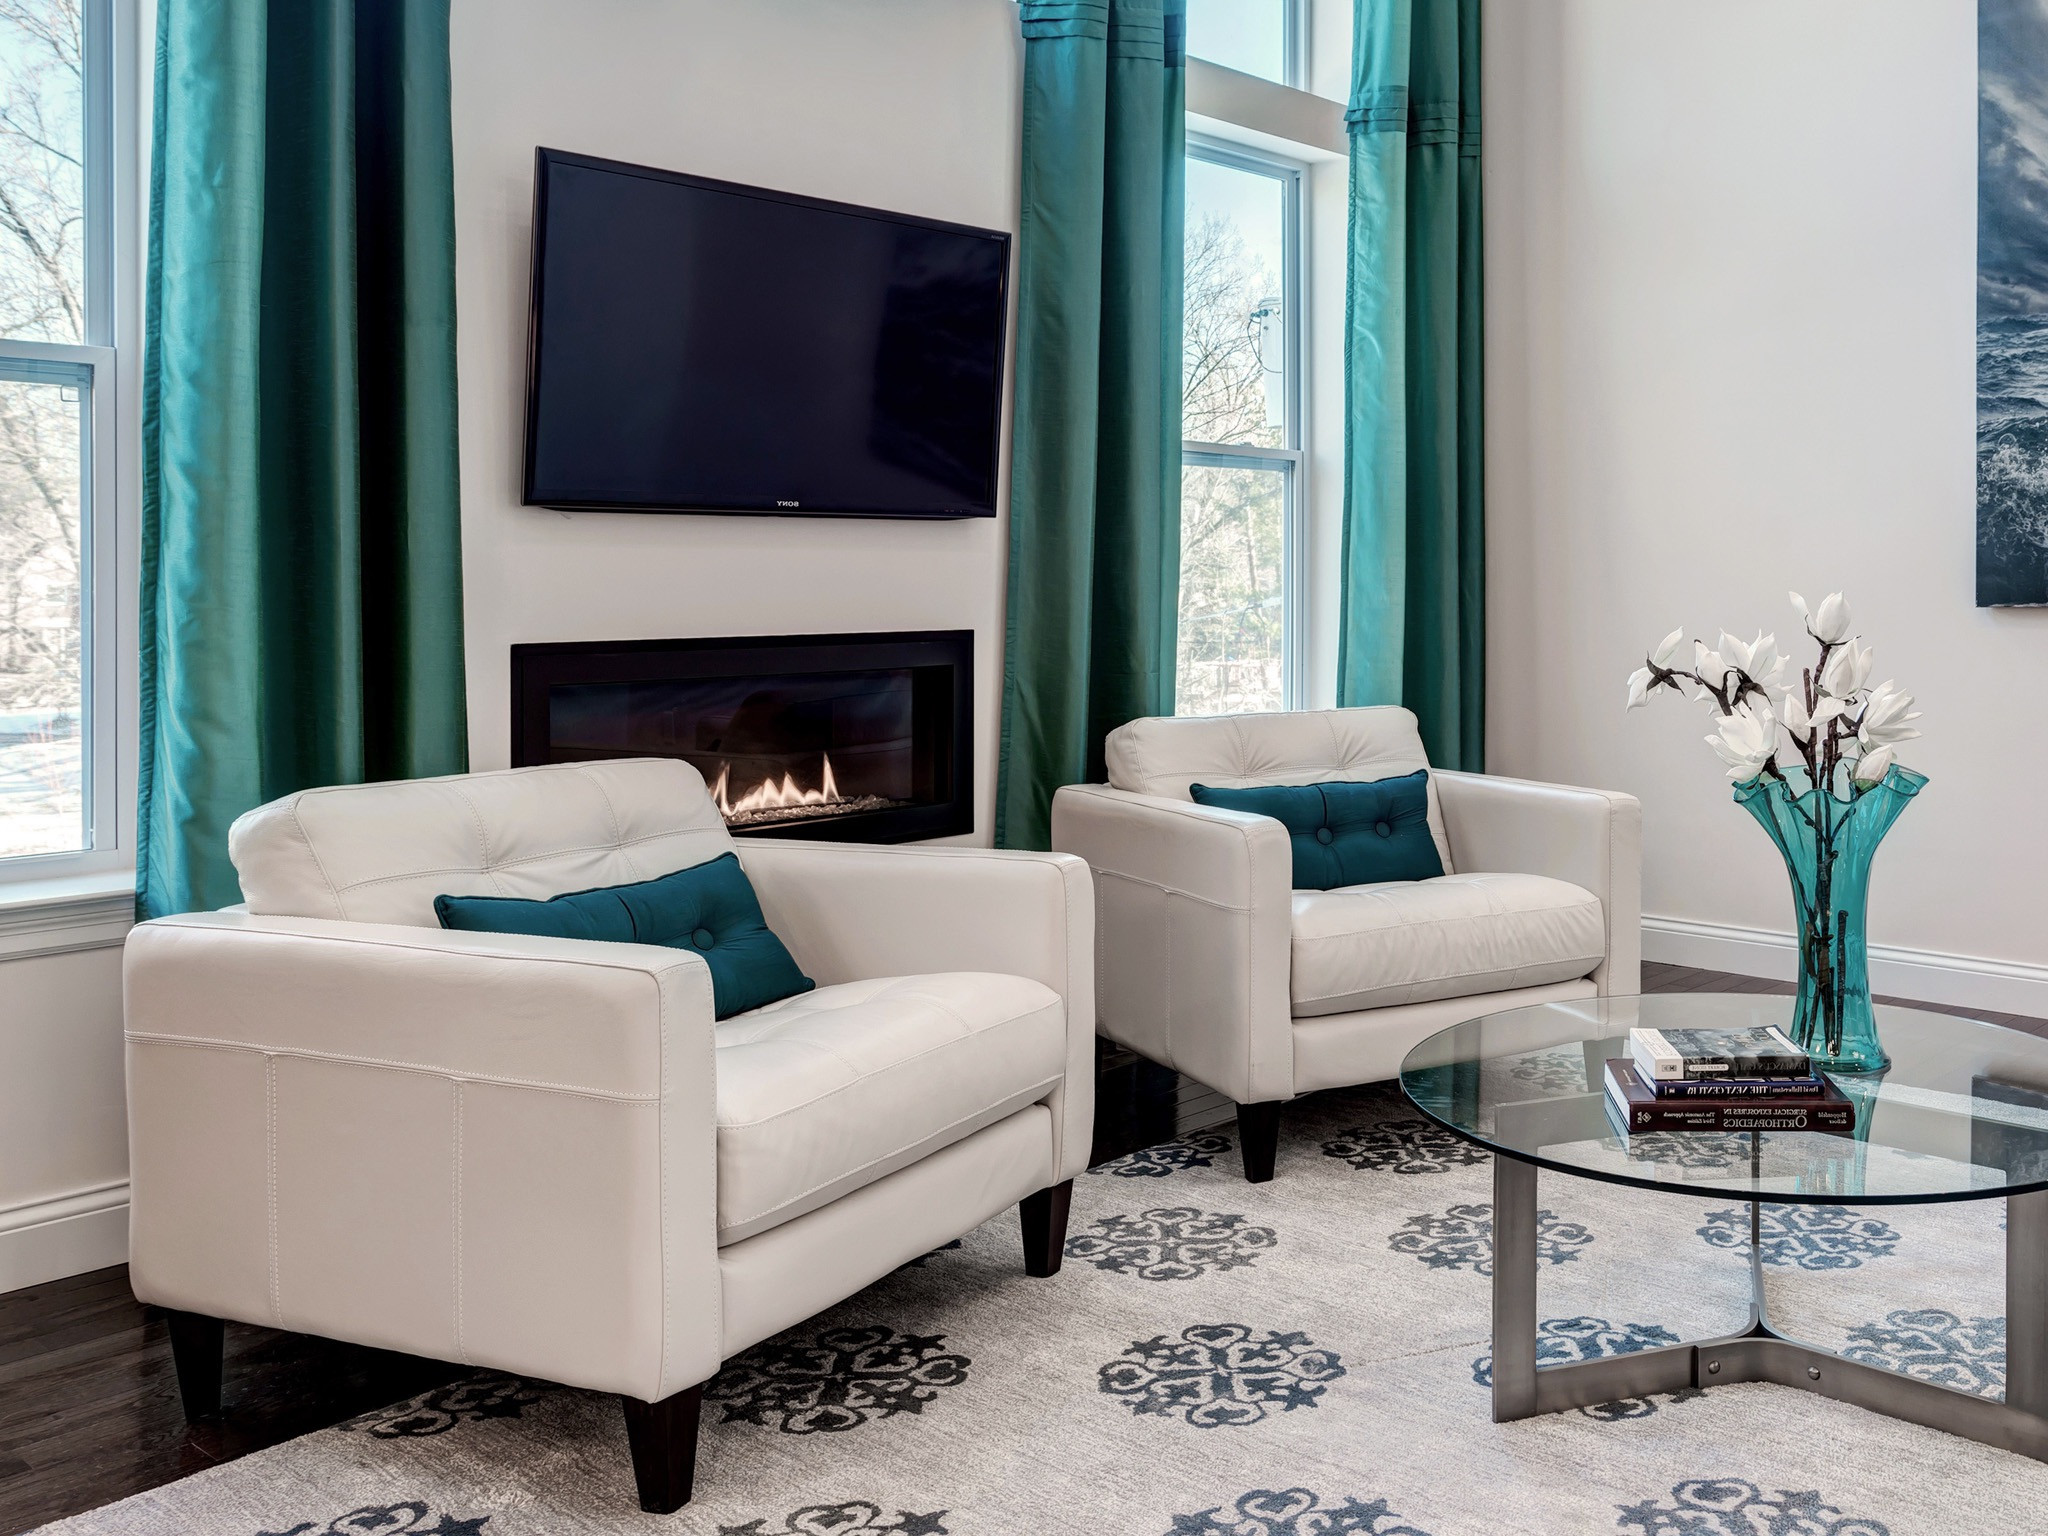 Modern White Living Room Furniture
 Tips For Choosing The Living Room Furniture Sets